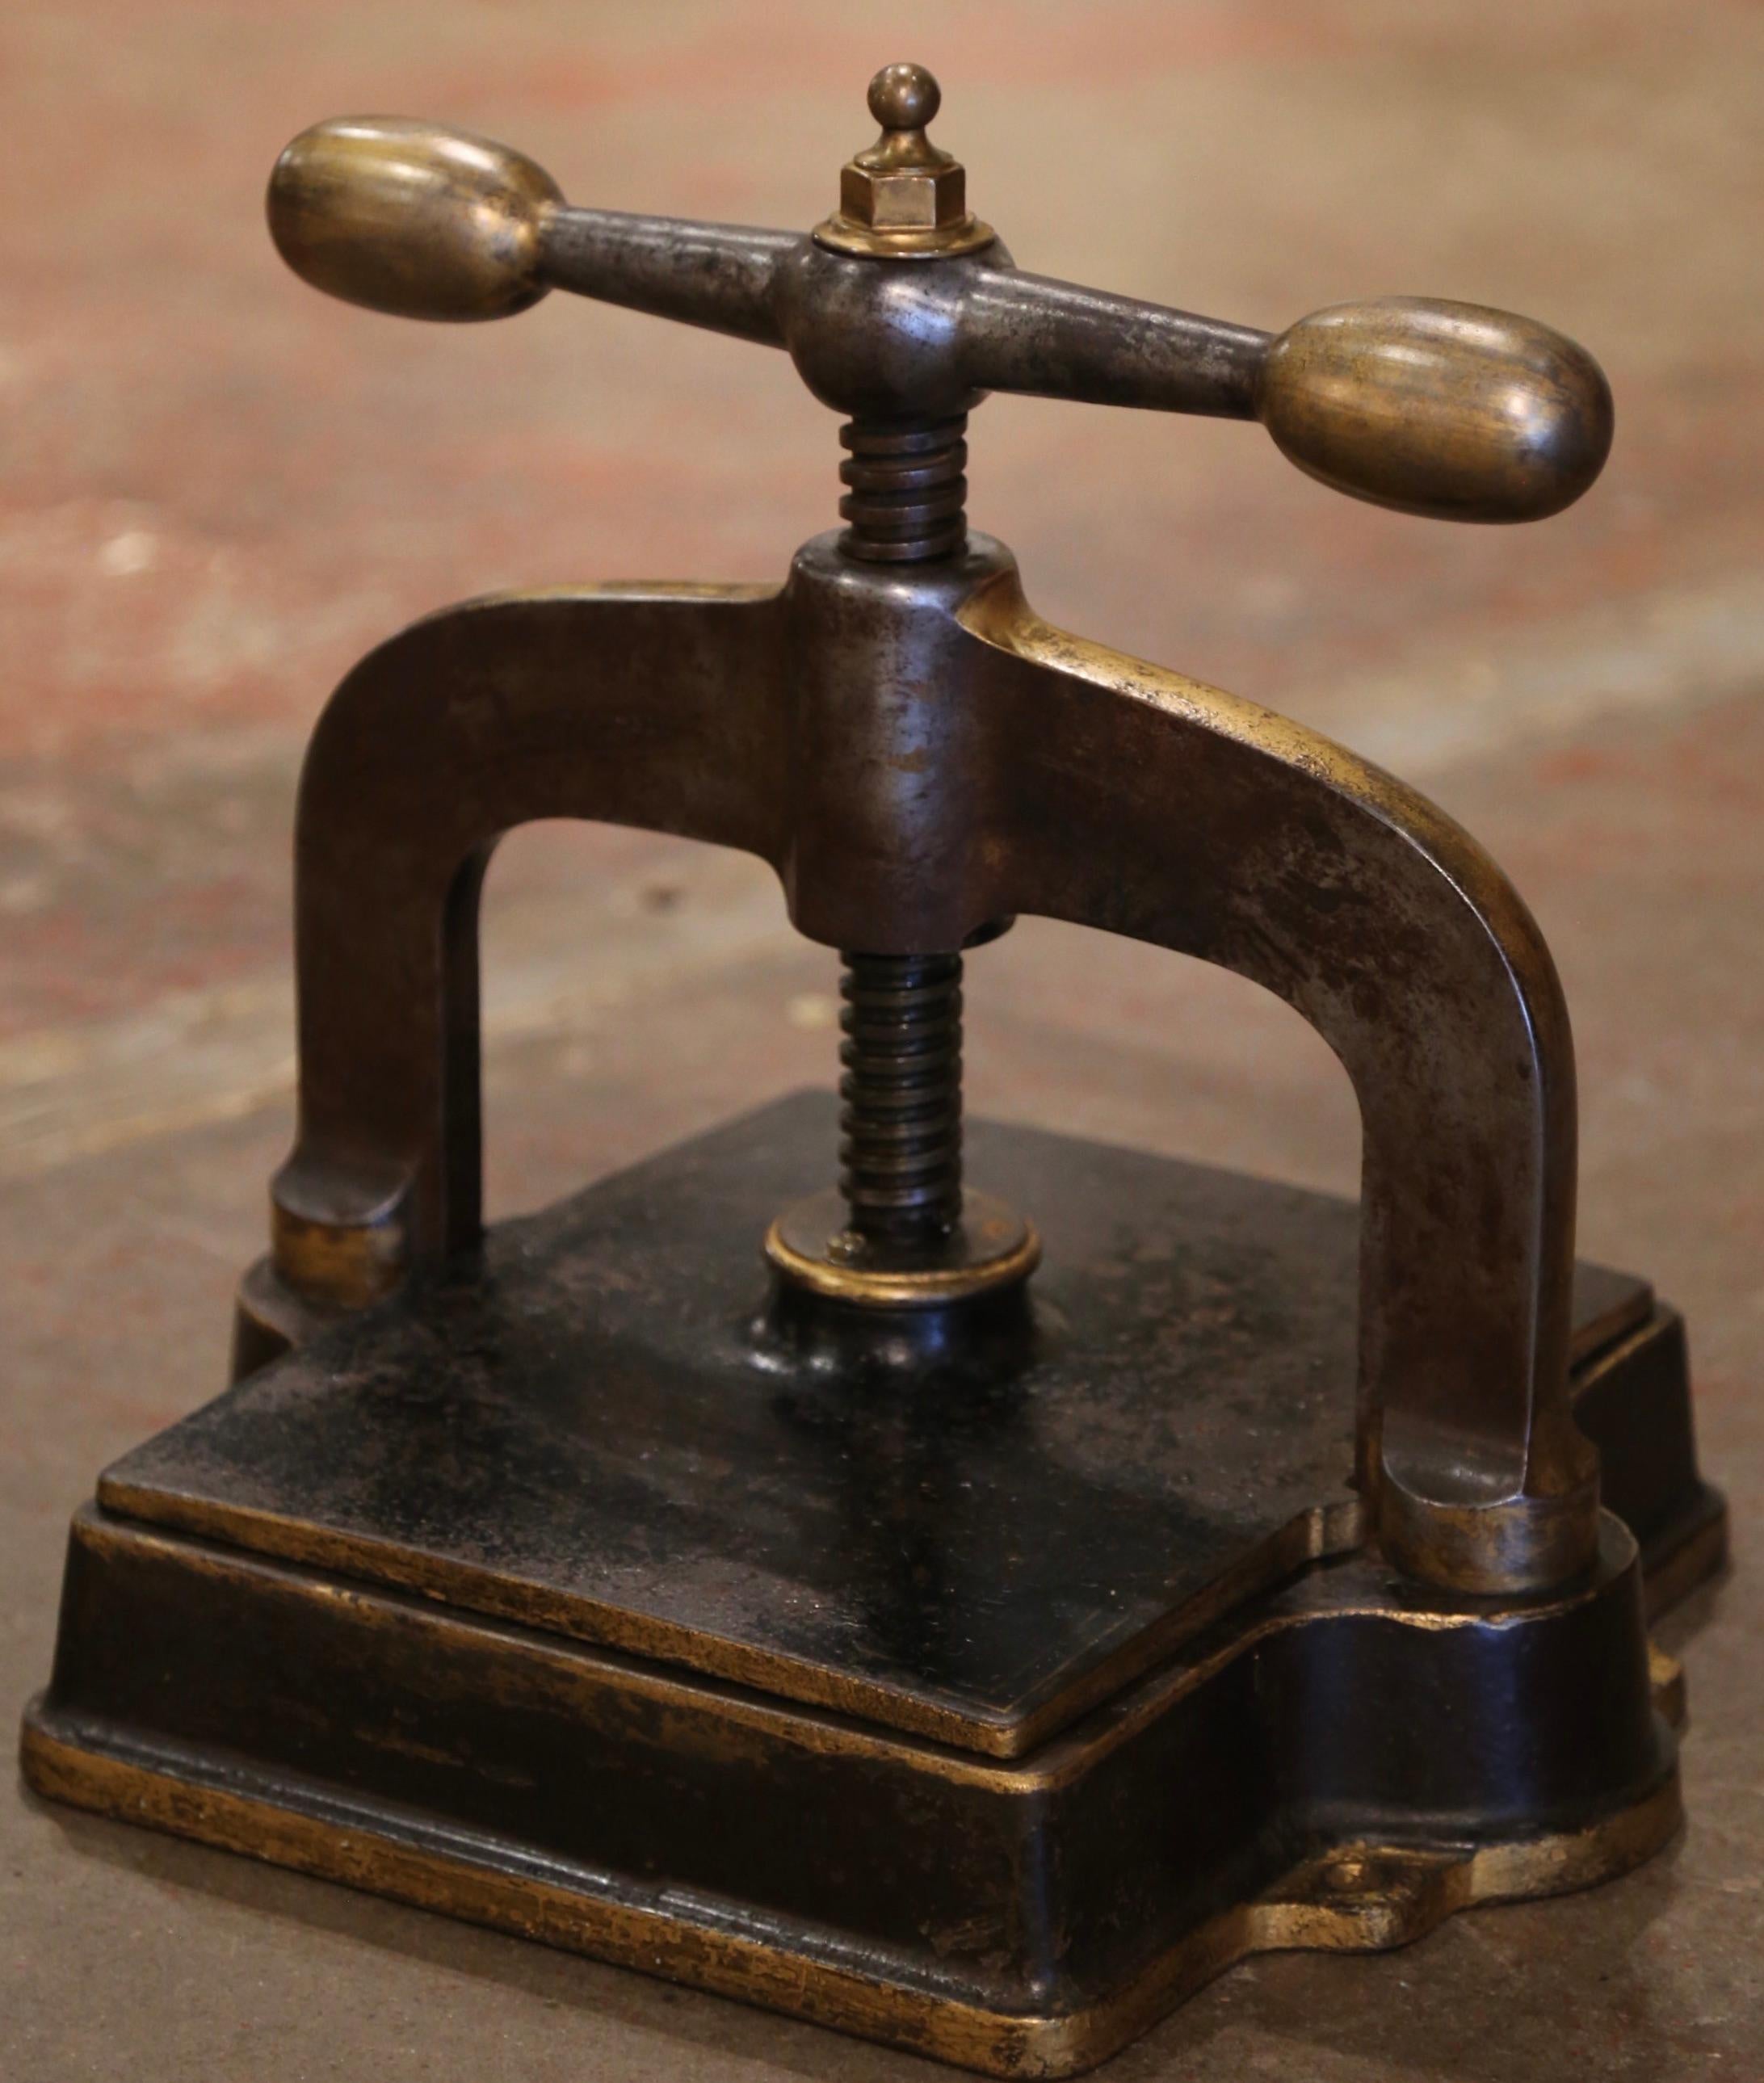 Cette ancienne presse à relier le papier a été forgée en France, vers 1870. Le 